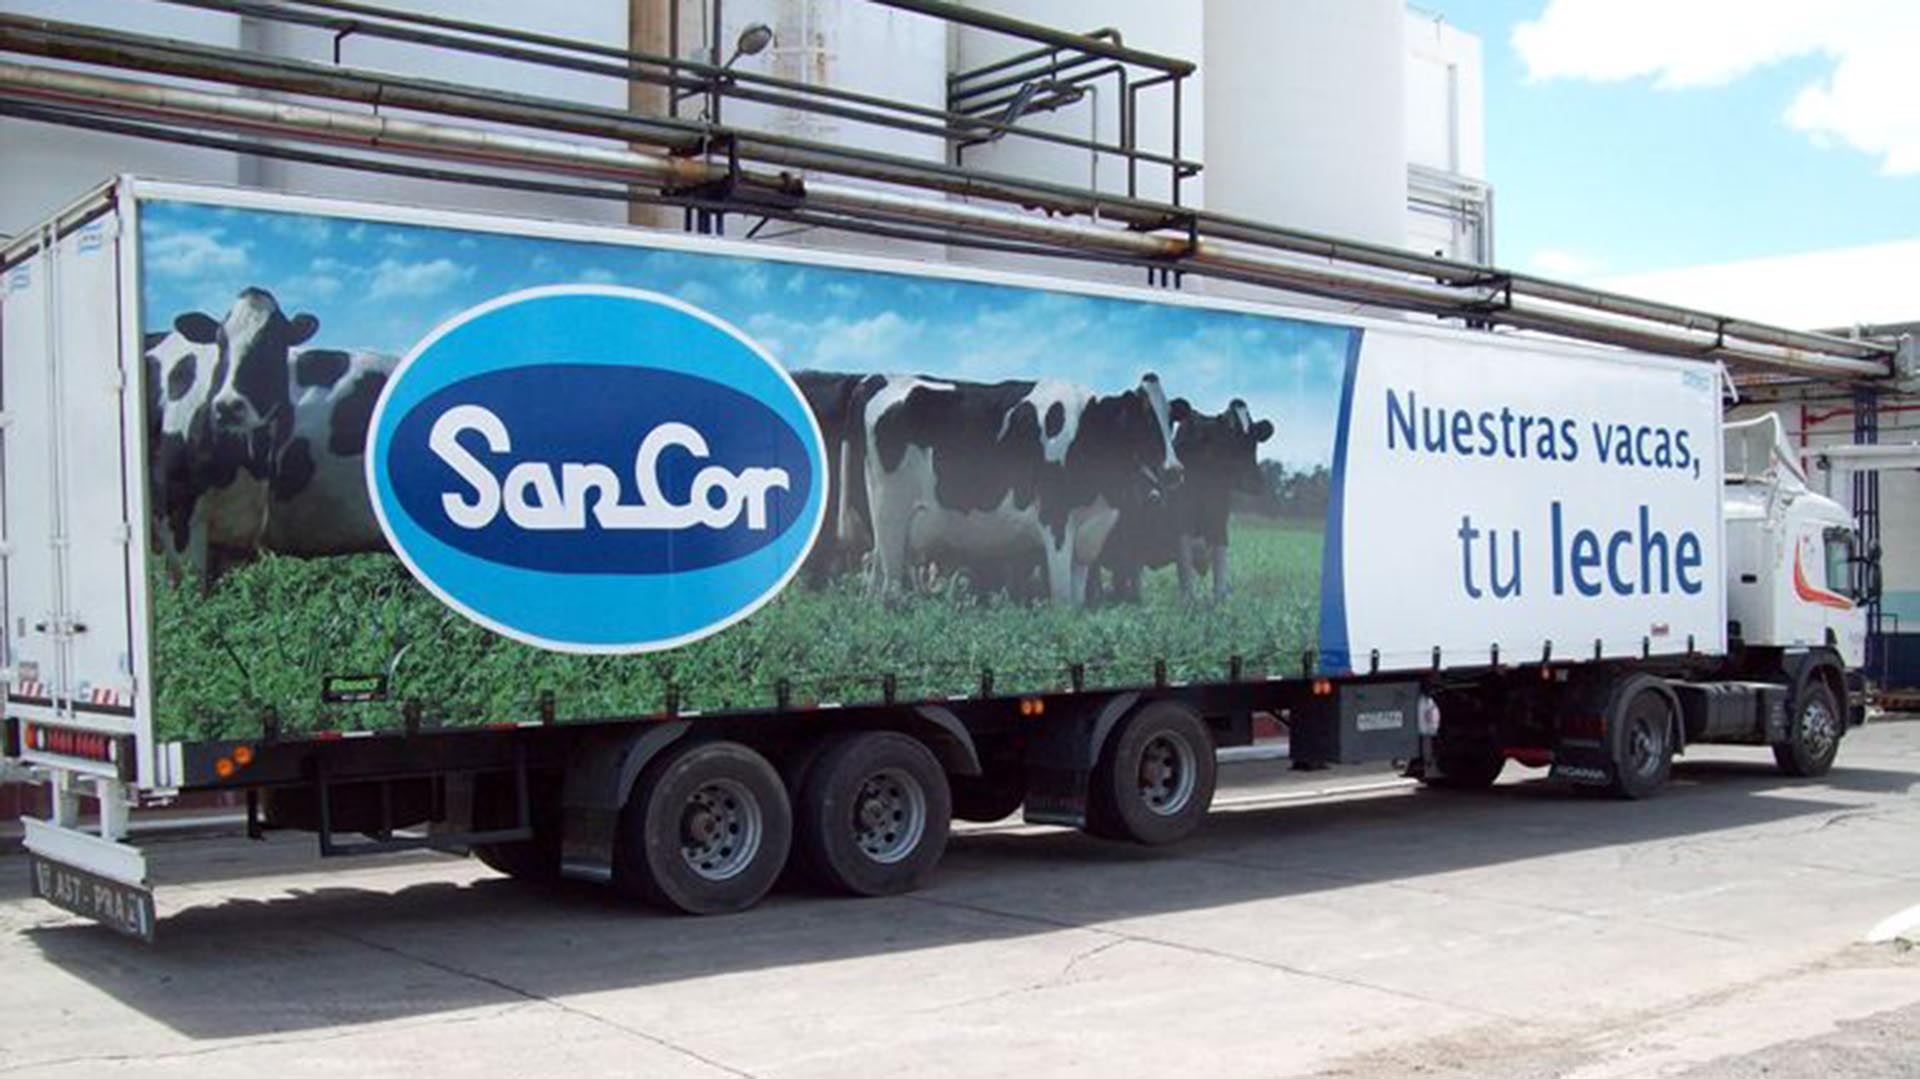 Sancor procesa unos 600 mil litros de leche por mes, pero cuenta con una capacidad de 4 millones de litros